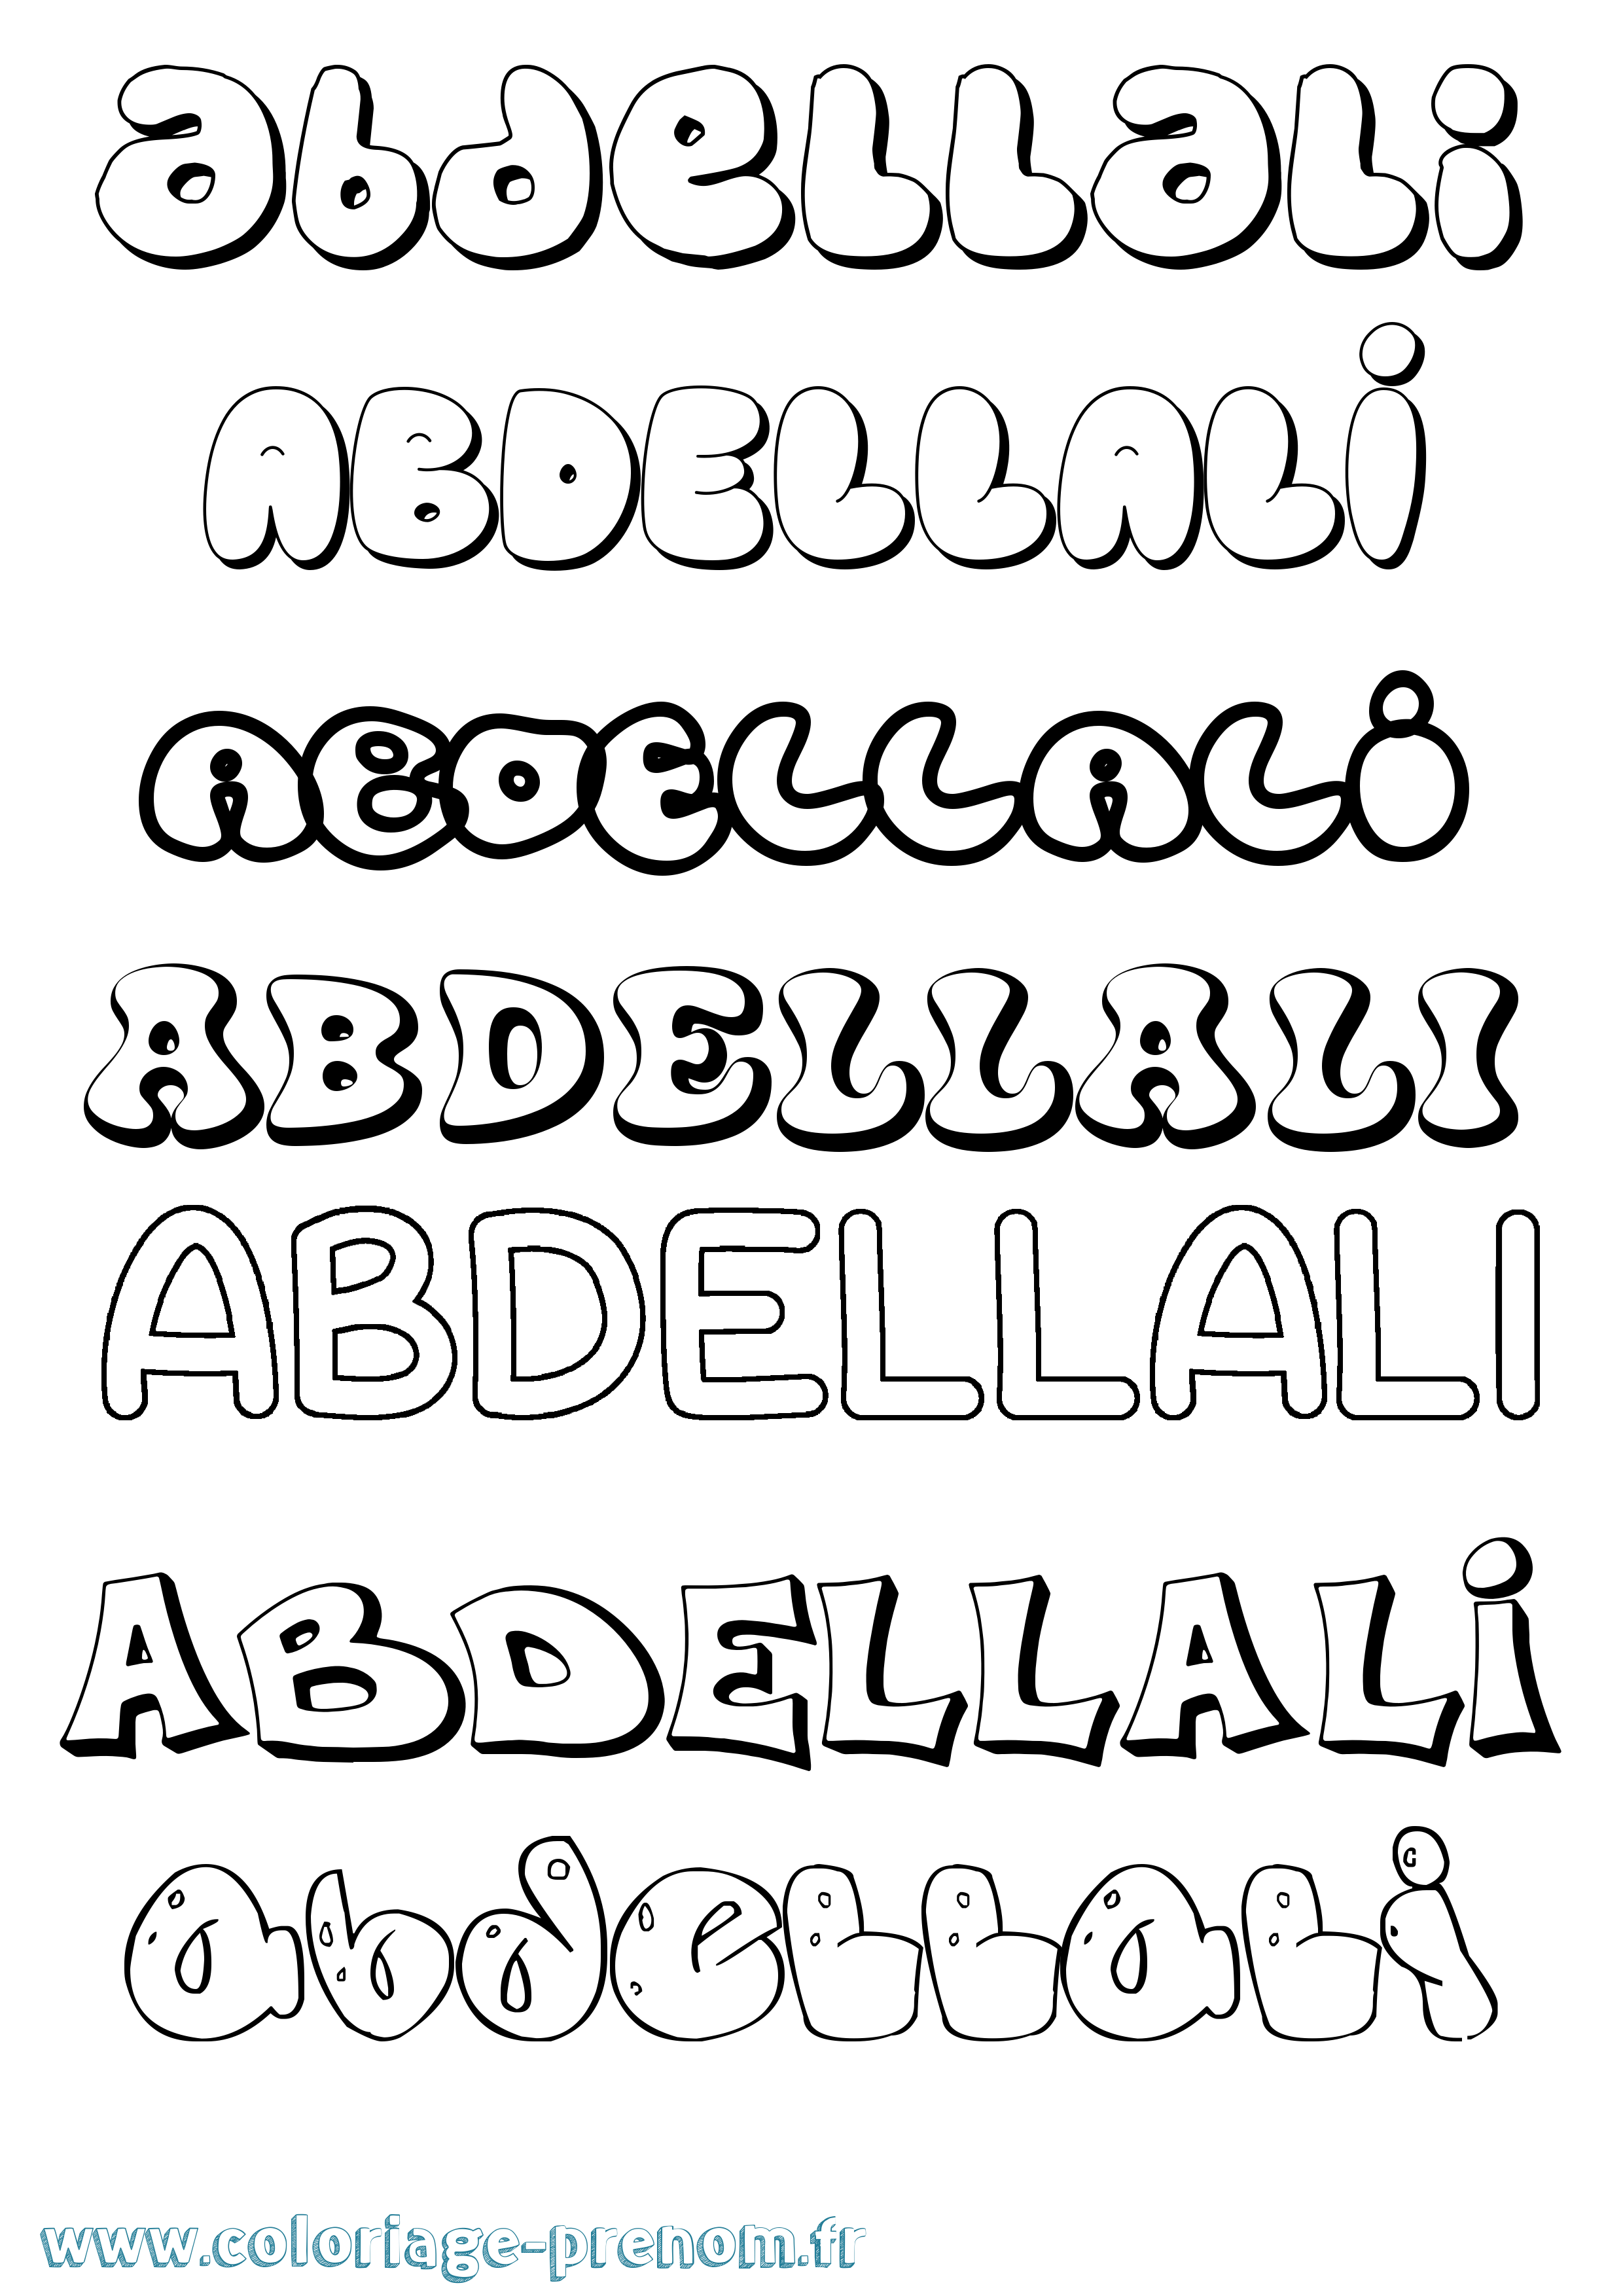 Coloriage prénom Abdellali Bubble